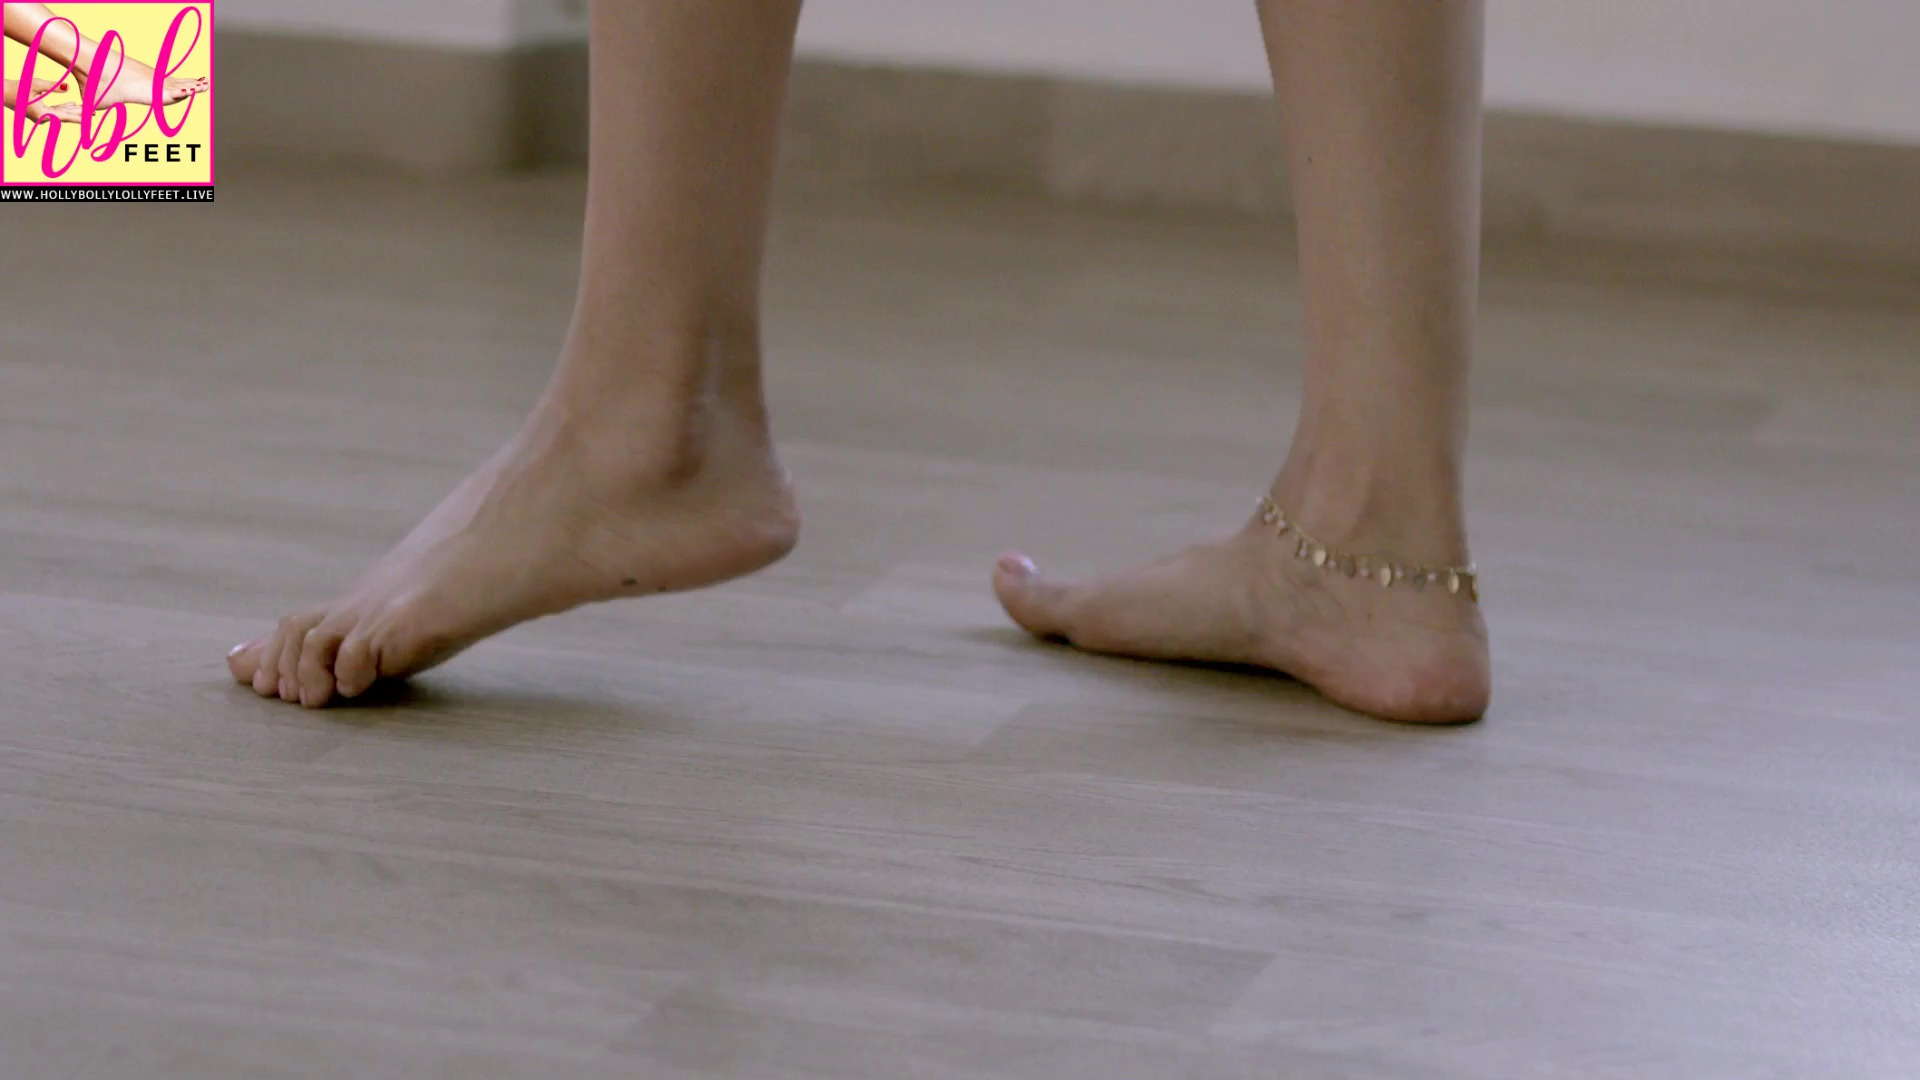 Priya Banerjee Feet Soles Holly Bolly Lolly Feet Hbl Feet. 